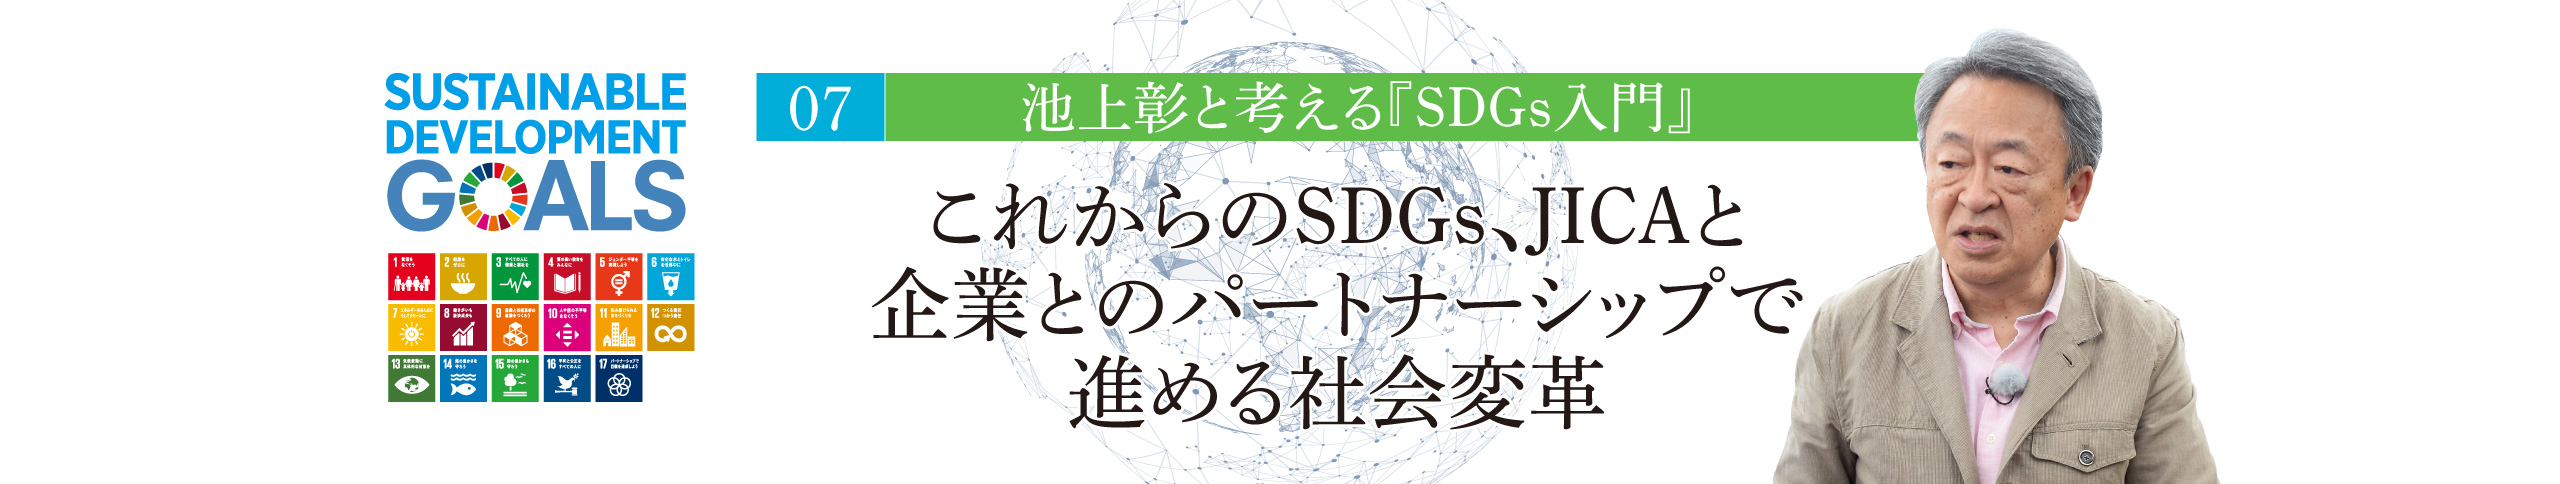 07 池上彰と考える『SDGs入門』 これからのSDGs、JICAと企業とのパートナーシップで進める社会変革